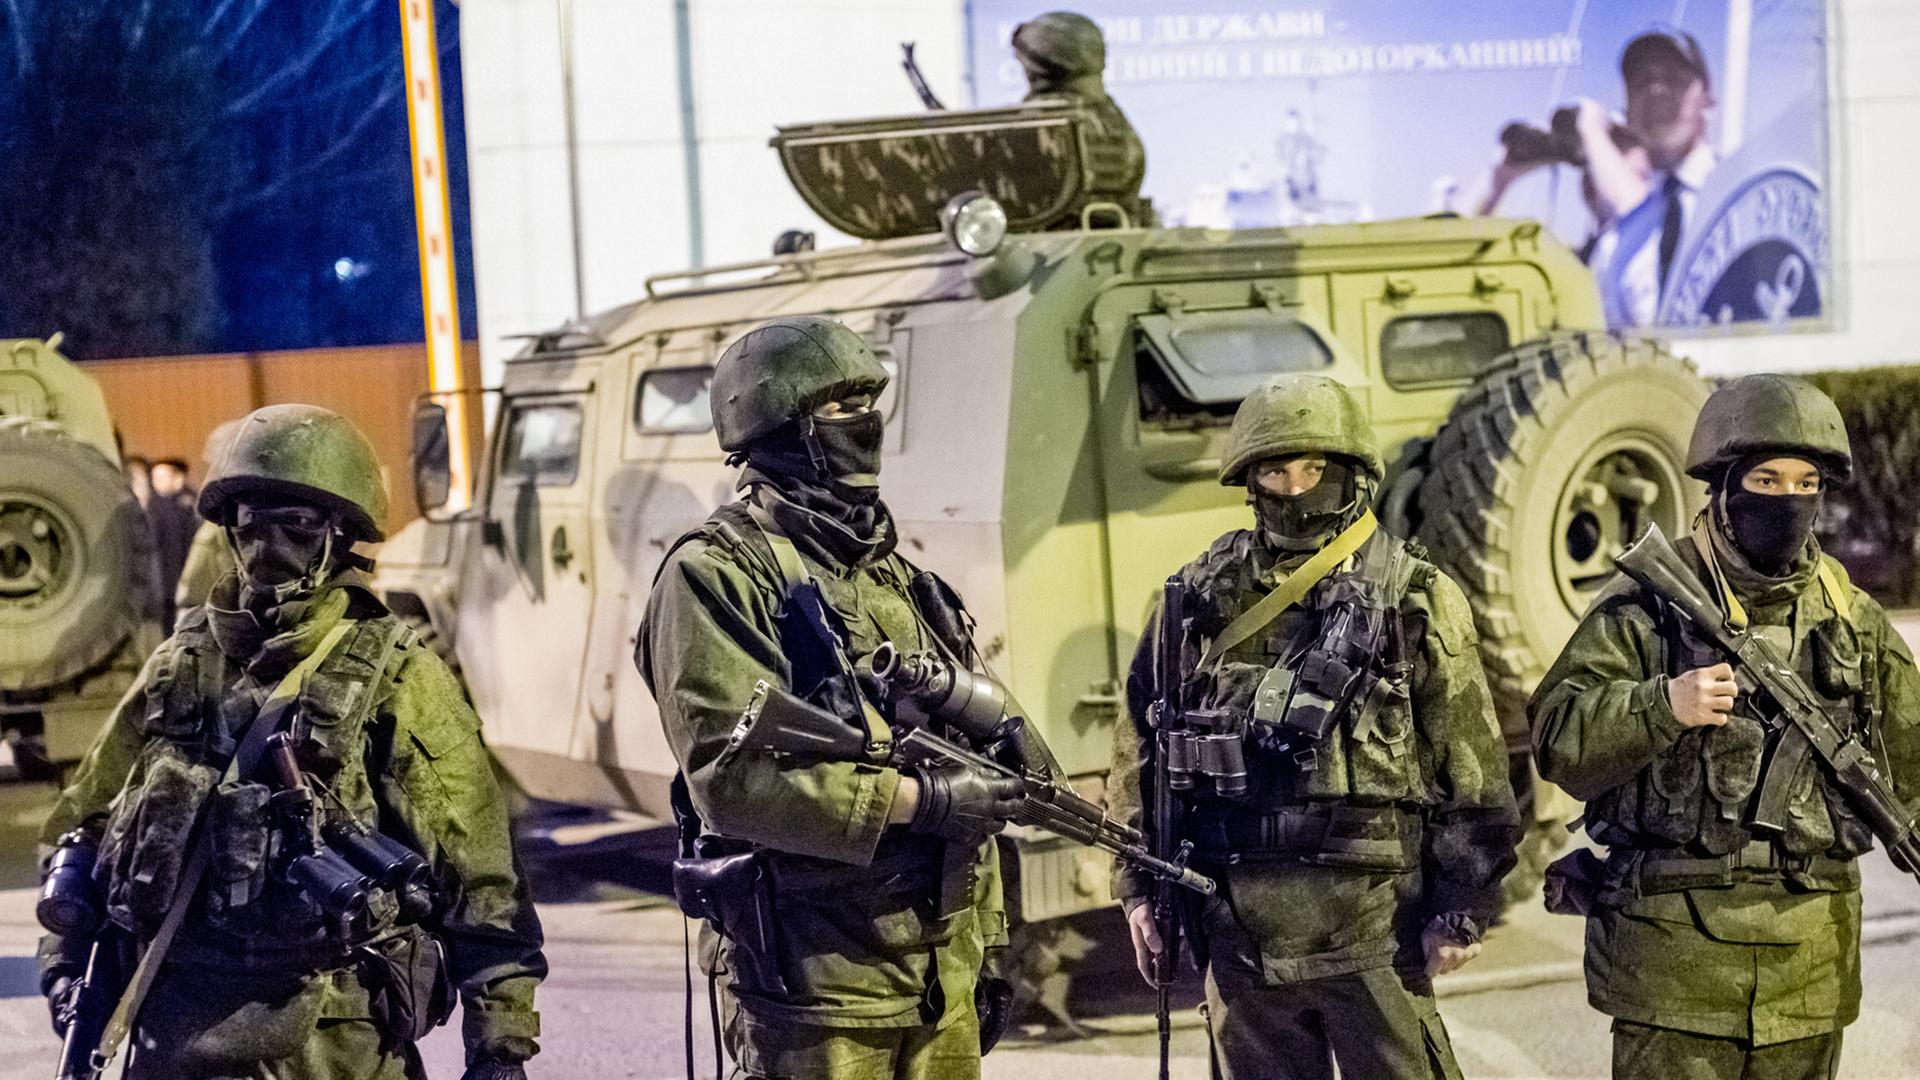 Mehrere vermummte Soldaten in grünen Uniformen mit Helmen und Maschinengewehren stehen vor einem Panzer